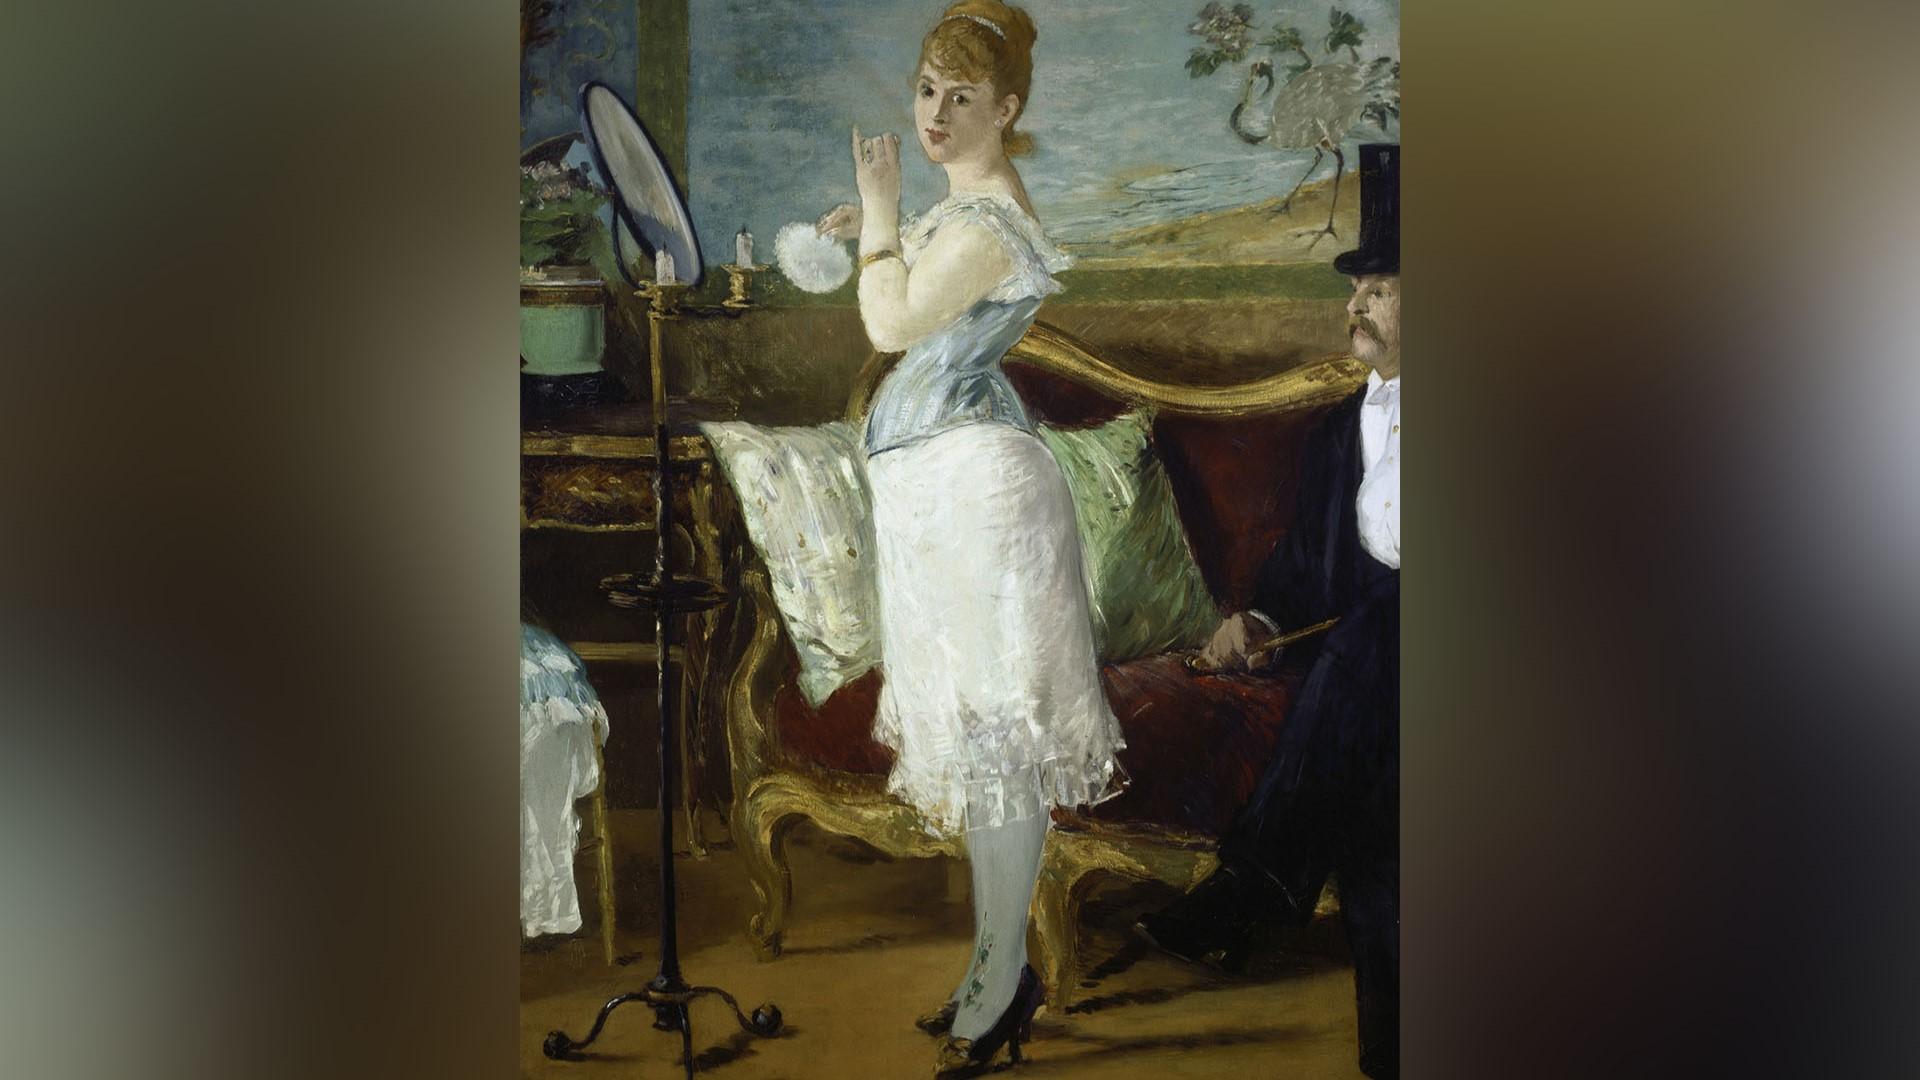 En del ord är så laddade att man ibland måste låta bli att säga dem högt. Nana, målning av Édouard Manet (1832–1883). Foto: Public Domain